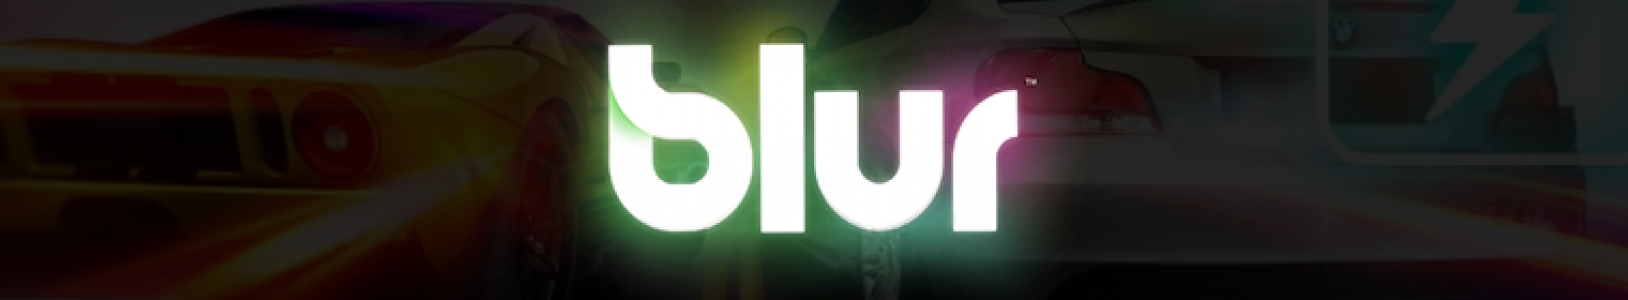 Blur banner